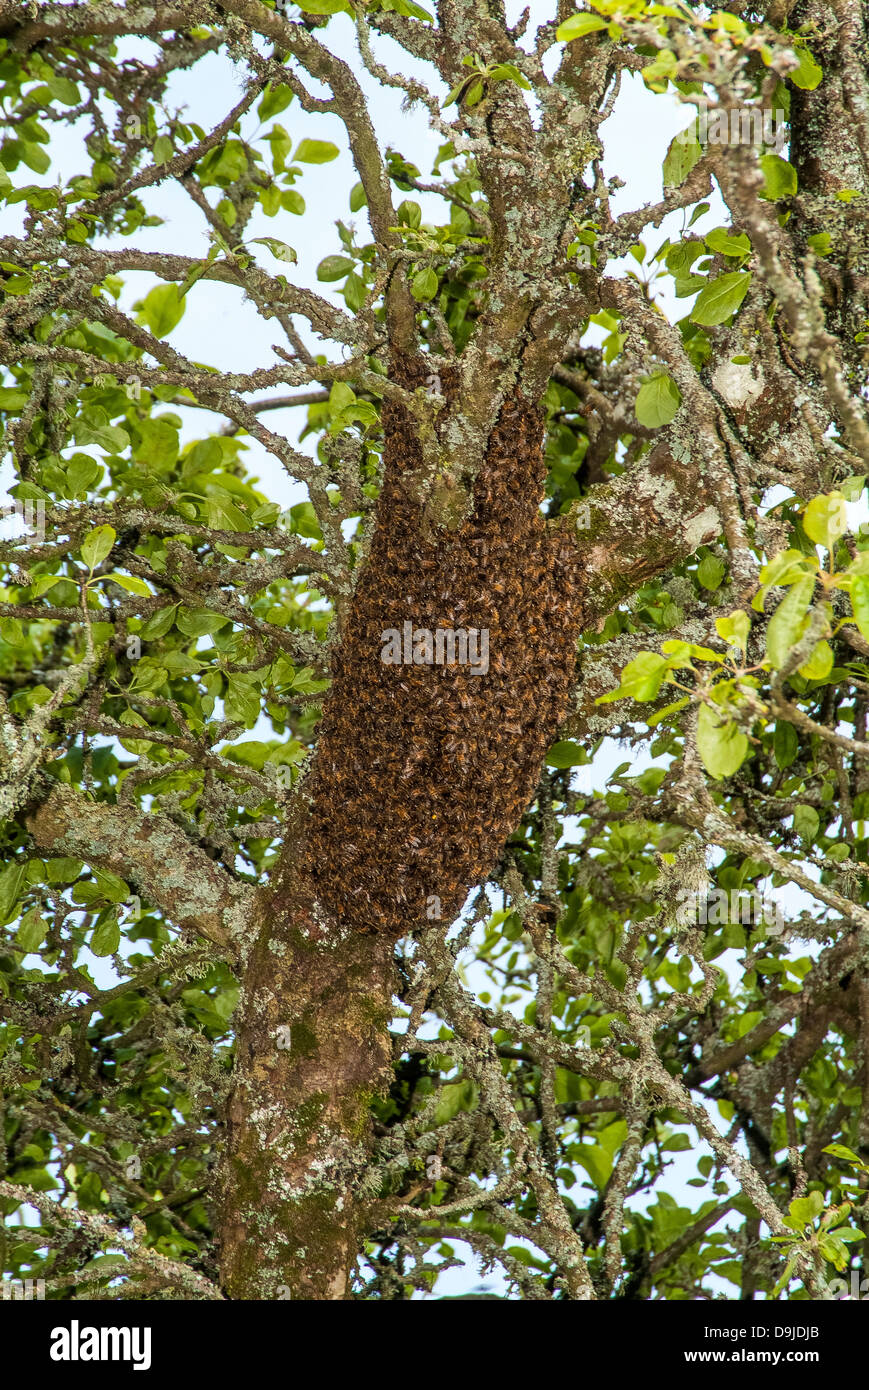 Un sciame di api in un albero di mele prima del trasferimento da parte dell'apicoltore. Modbury, Devon. REGNO UNITO Foto Stock